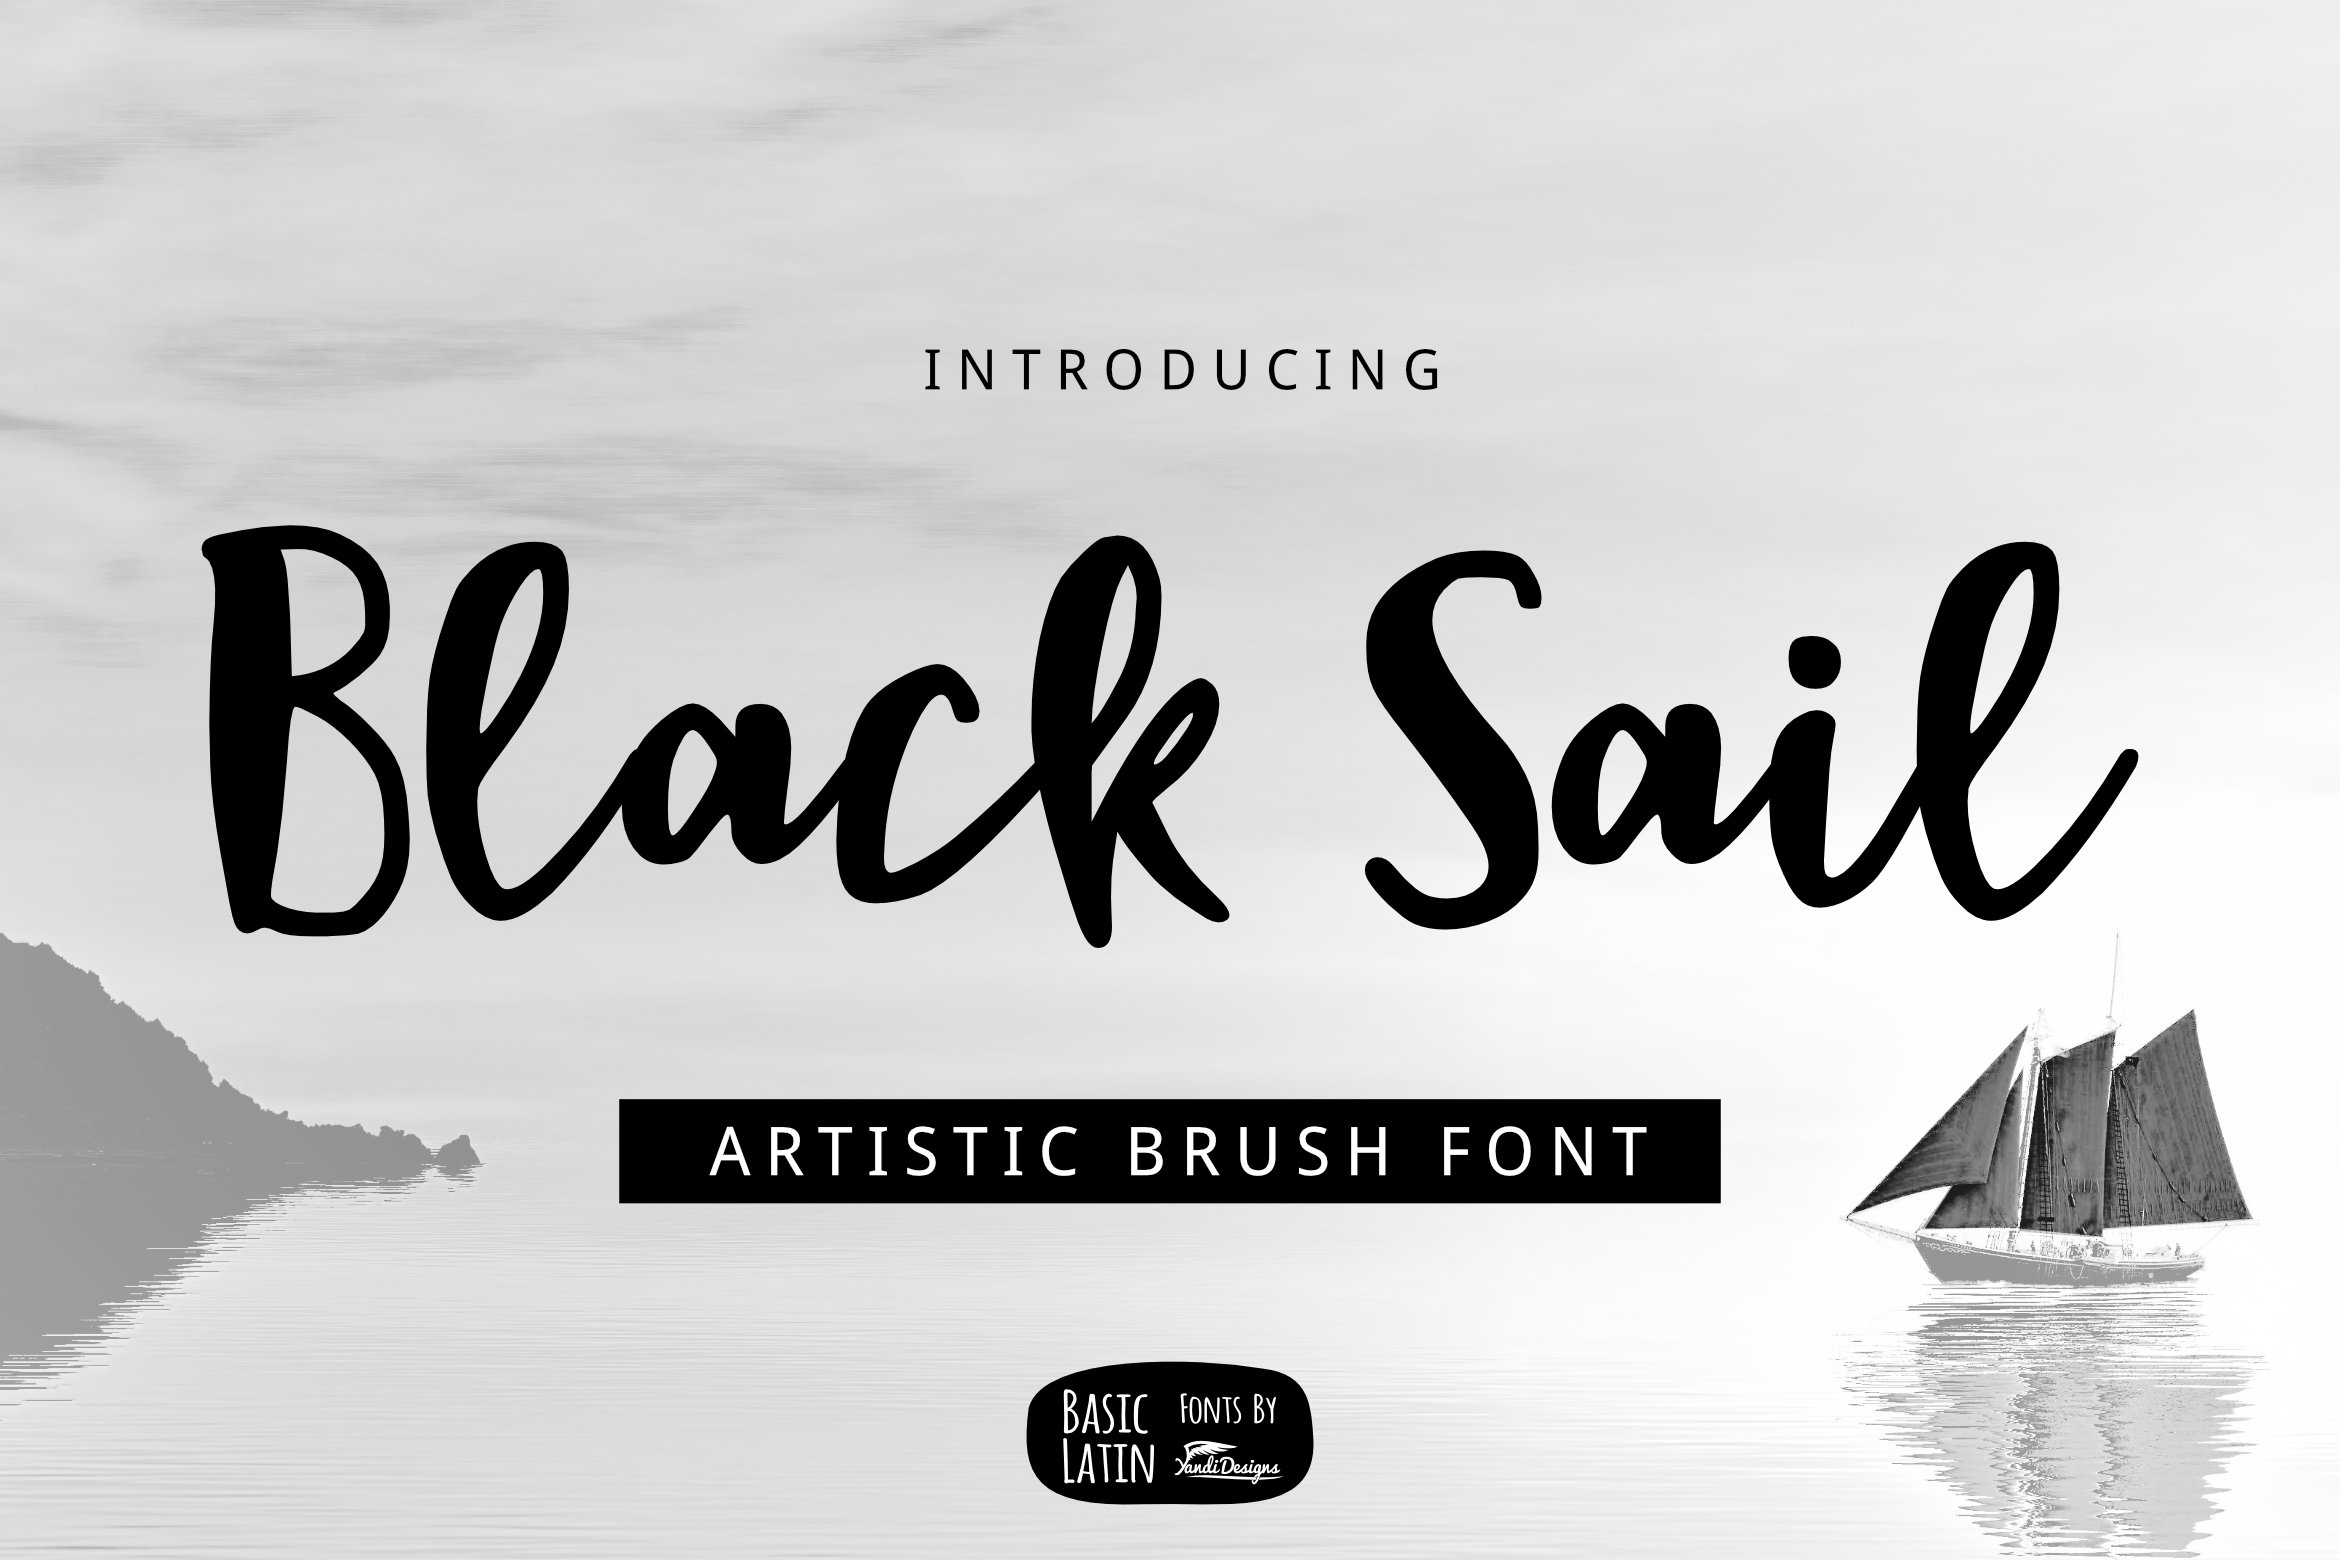 Black Sail Brush Font cover image.